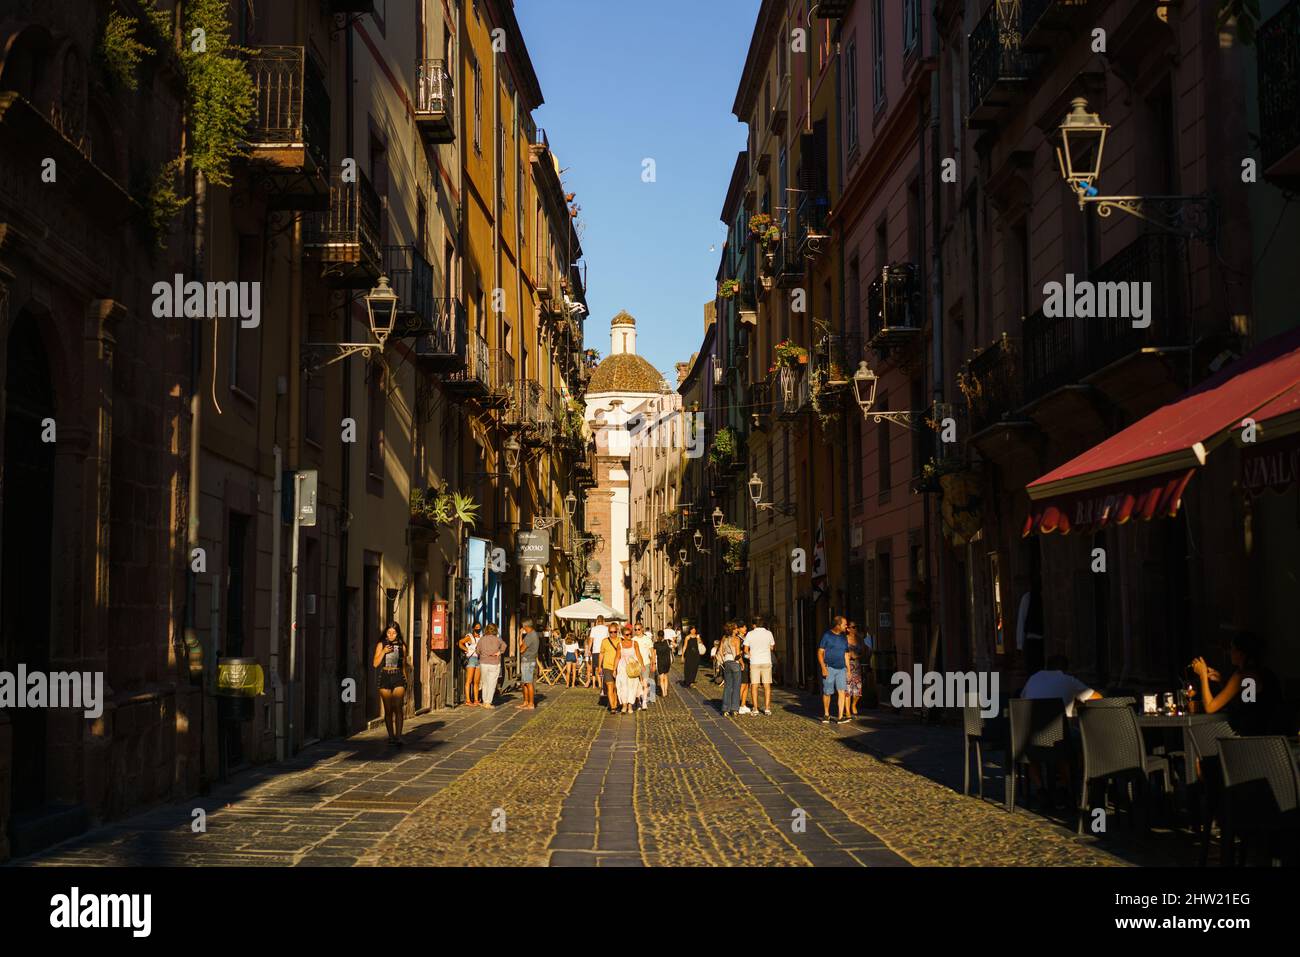 Bosa, Sardinien, Italien, Europa. Stockfoto